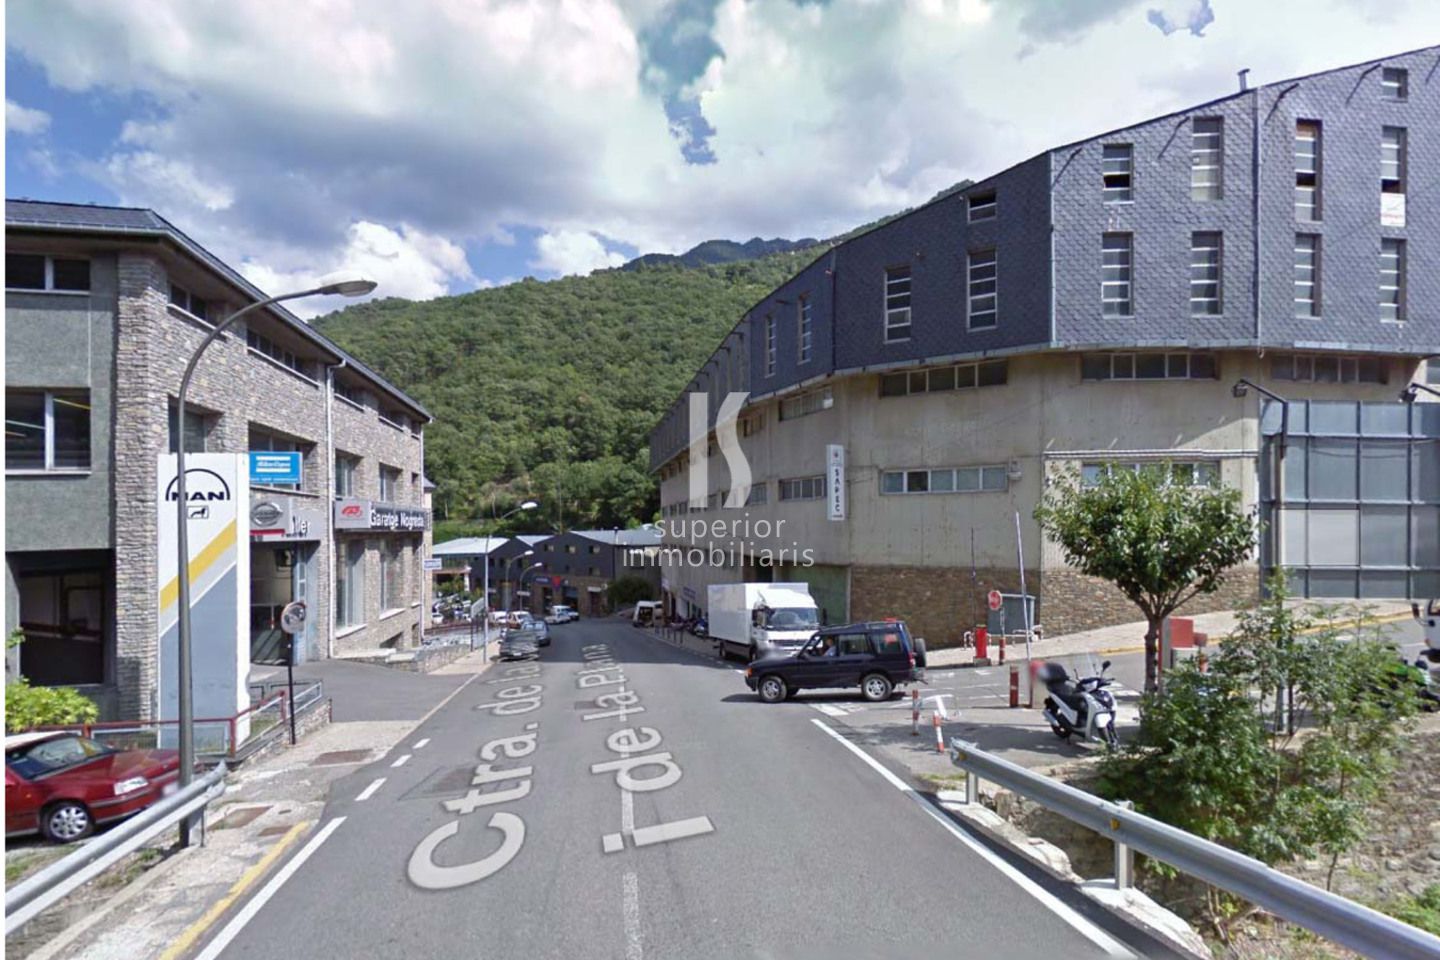 Nave Industrial de alquiler en Andorra la Vella, 300 metros